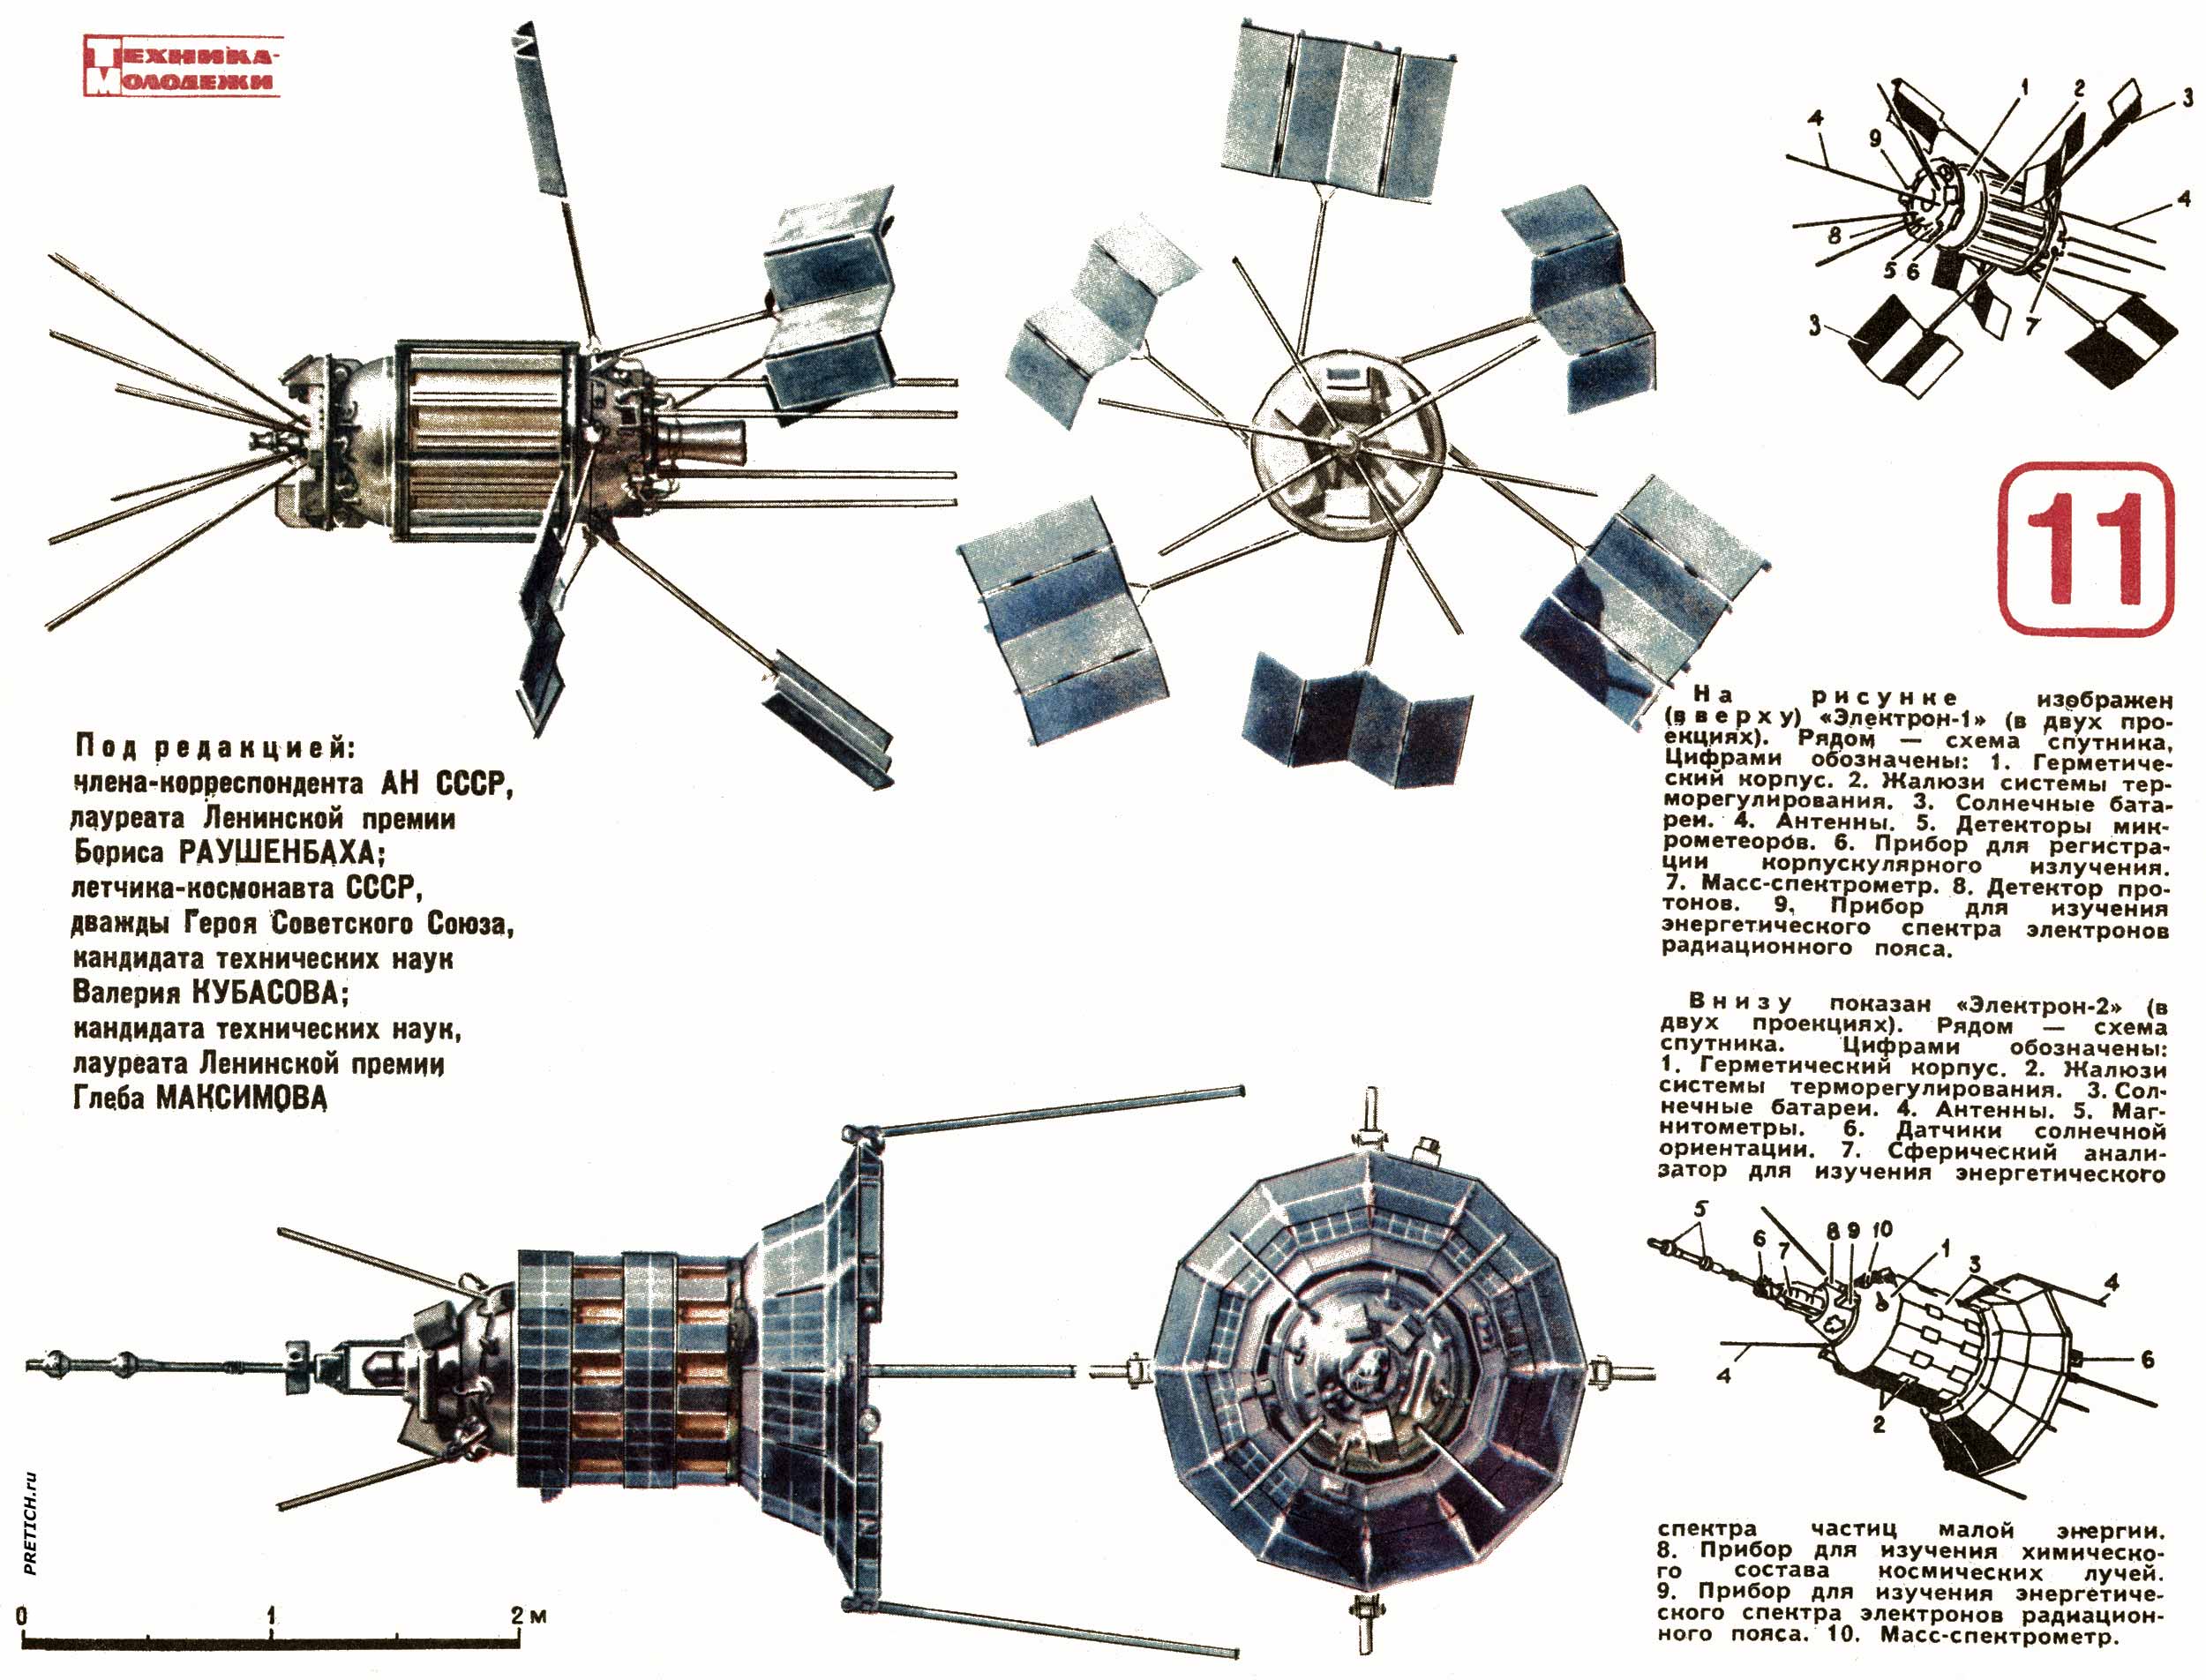 Электрон-1 и Электрон-2, Советские искусственные спутники Земли